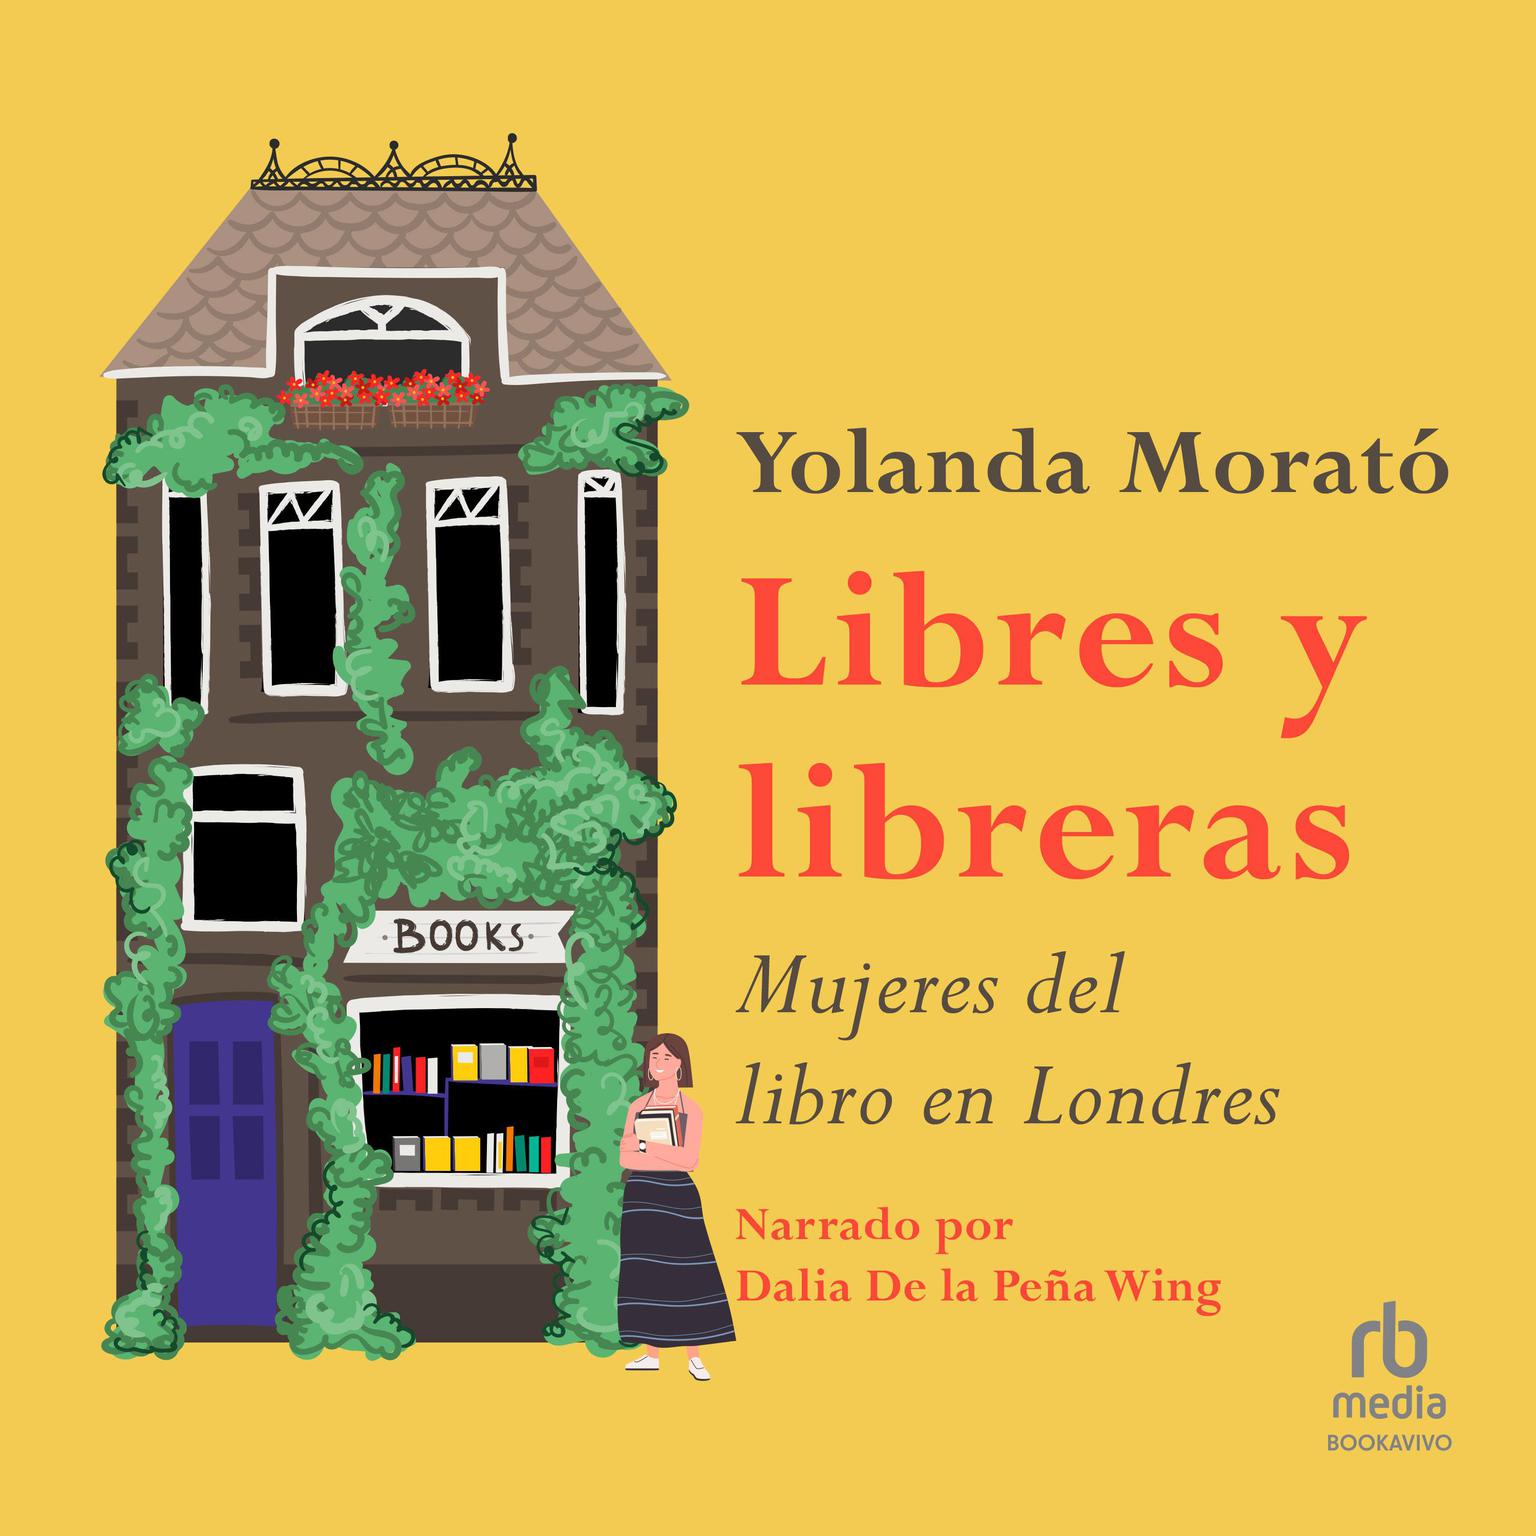 Libres y libreras: Mujeres del libro en Londres (The Female Bookkeepers of London) Audiobook, by Yolanda Morato